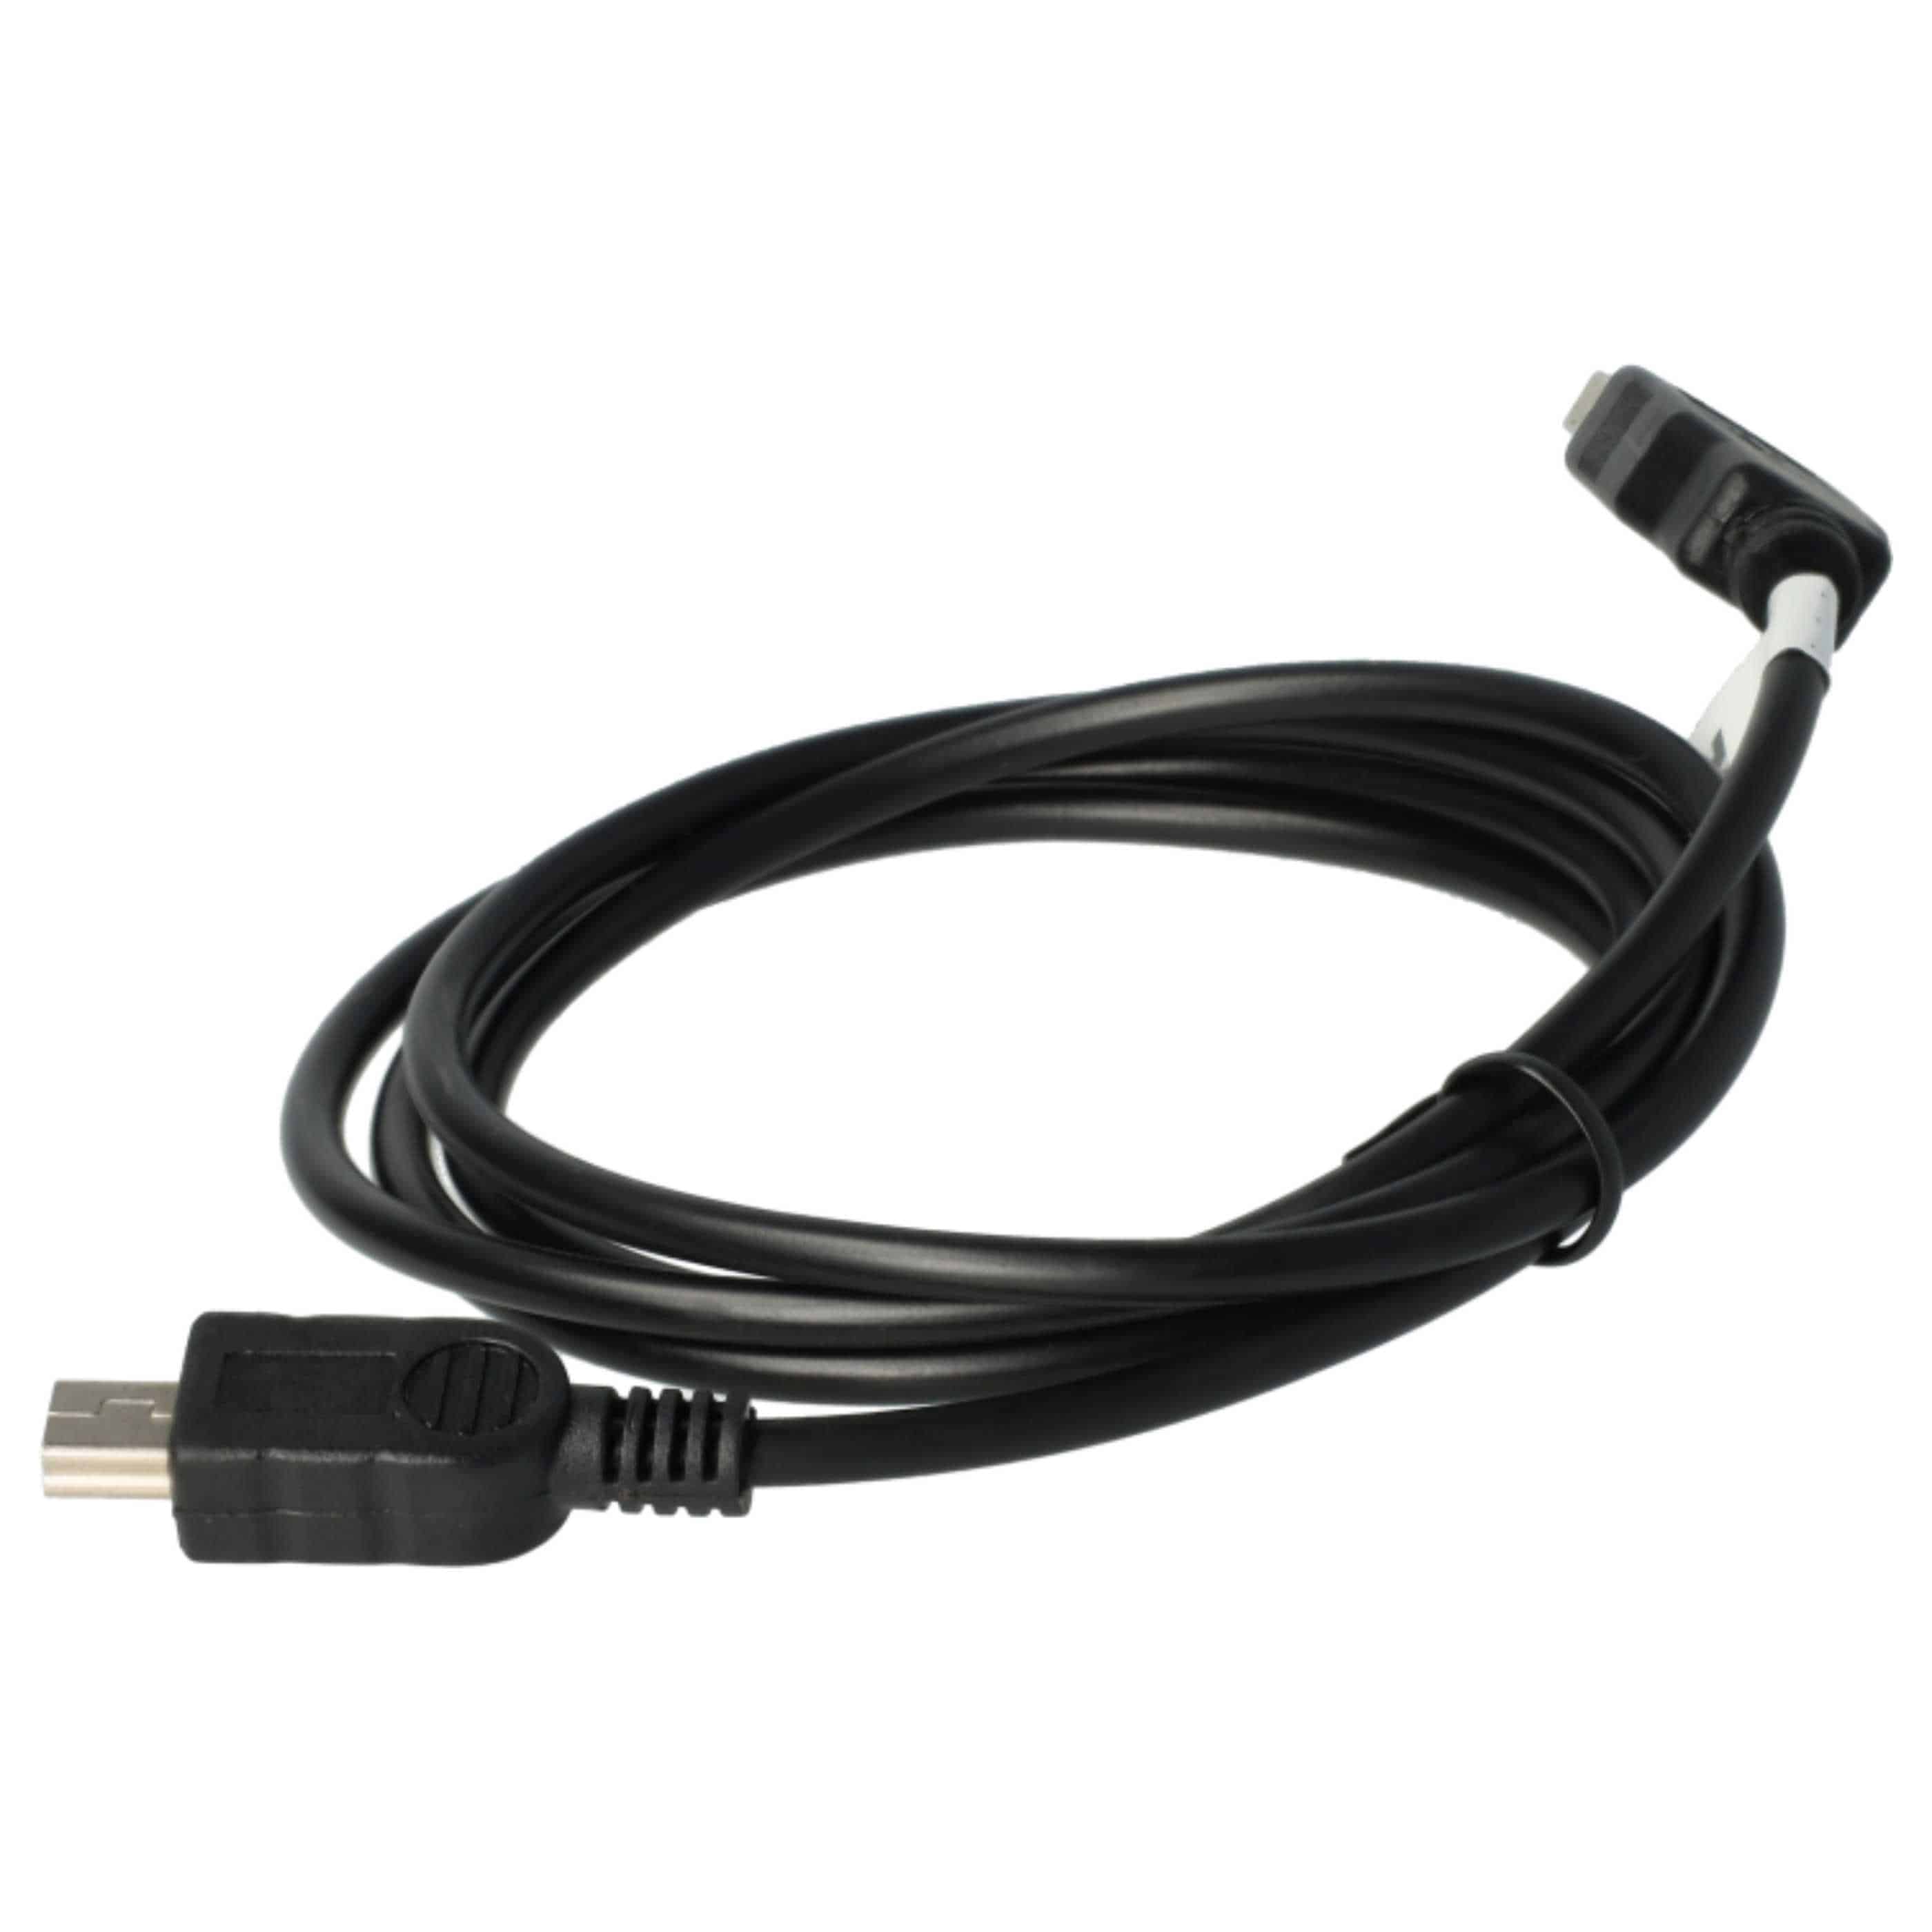 Cable datos USB para móvil Nokia E51 - cable de carga 2 en 1, 100cm